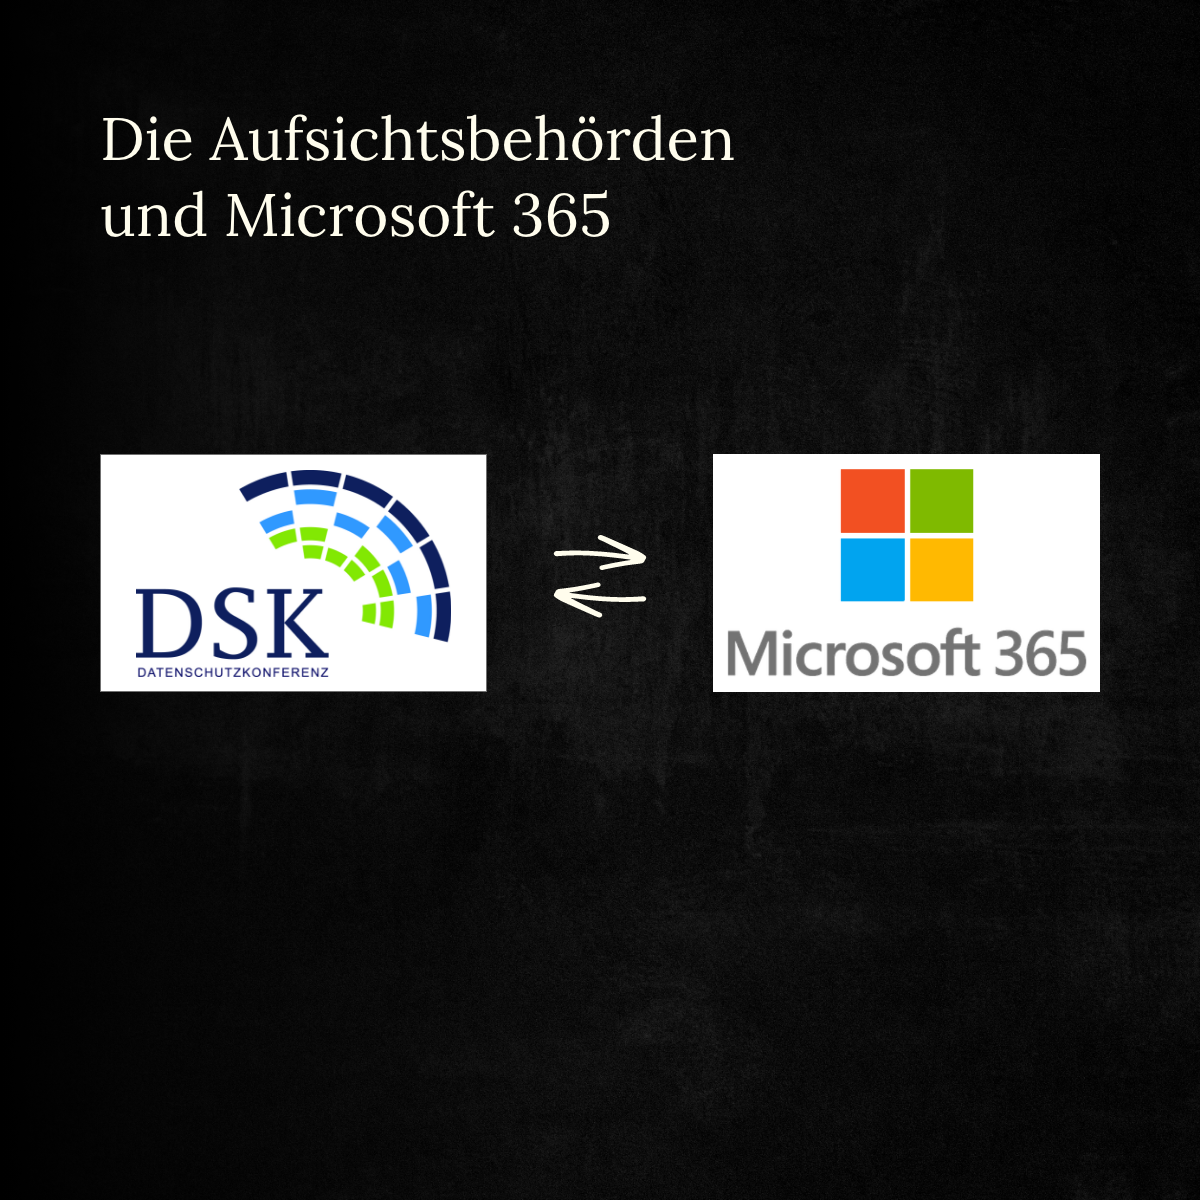 Die Aufsichtsbehörden und Microsoft 365